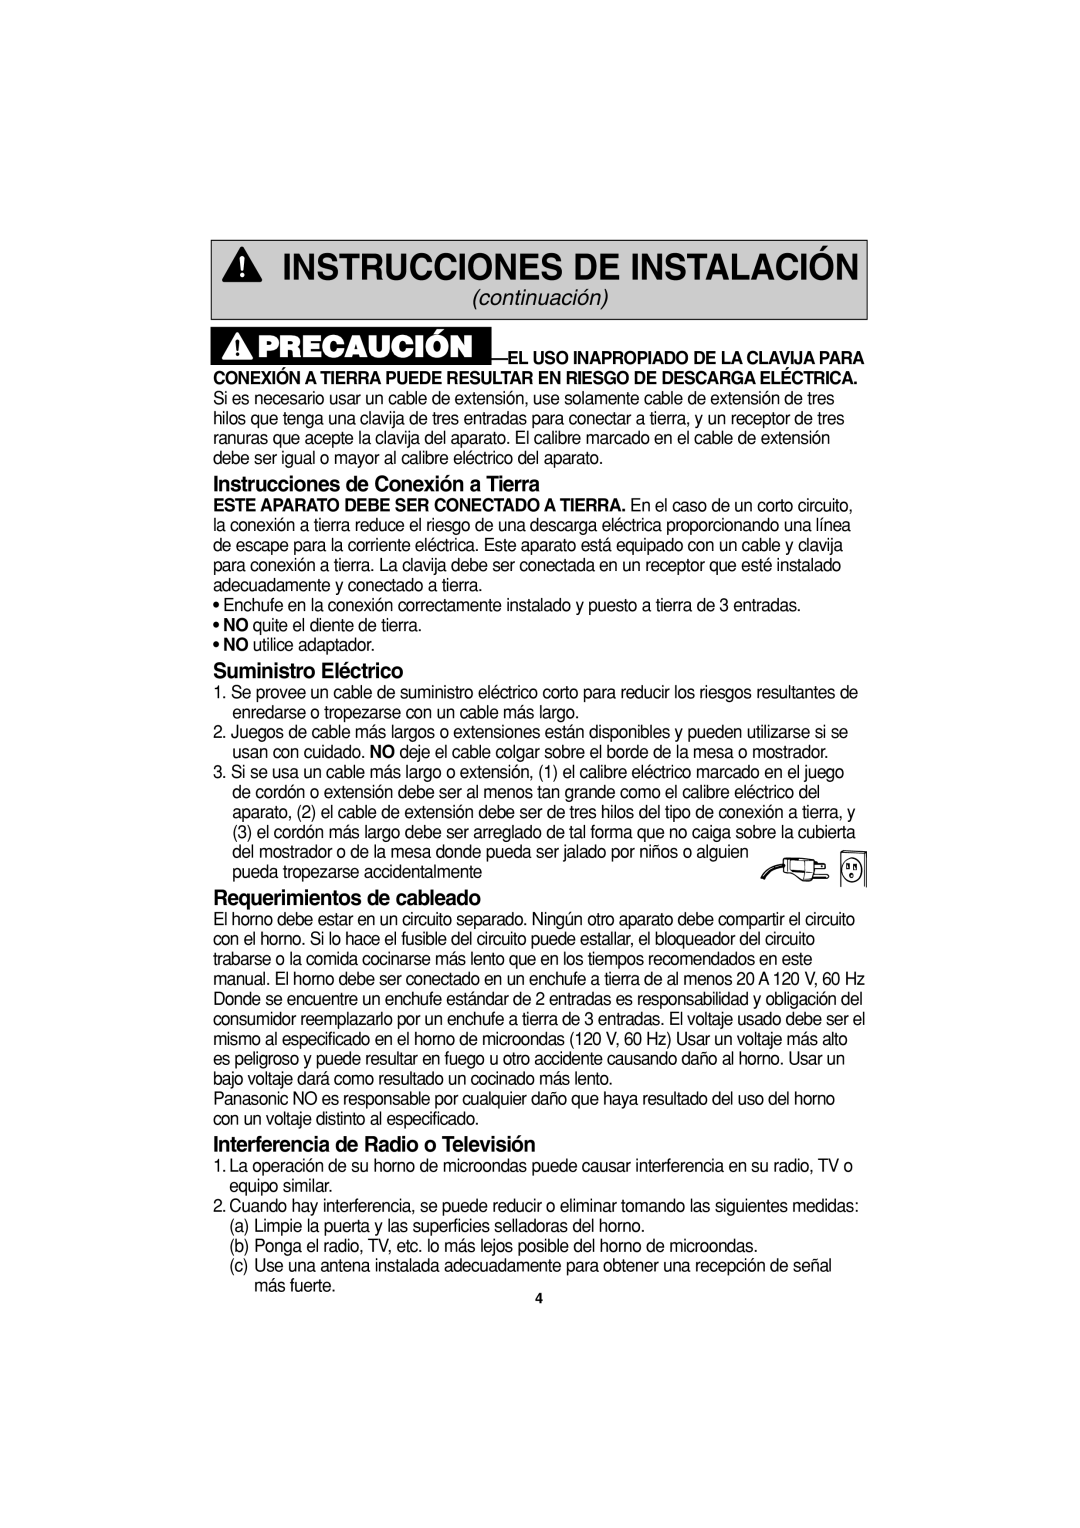 Panasonic NN-S443 Instrucciones de Conexión a Tierra, Suministro Eléctrico, Requerimientos de cableado, continuación 